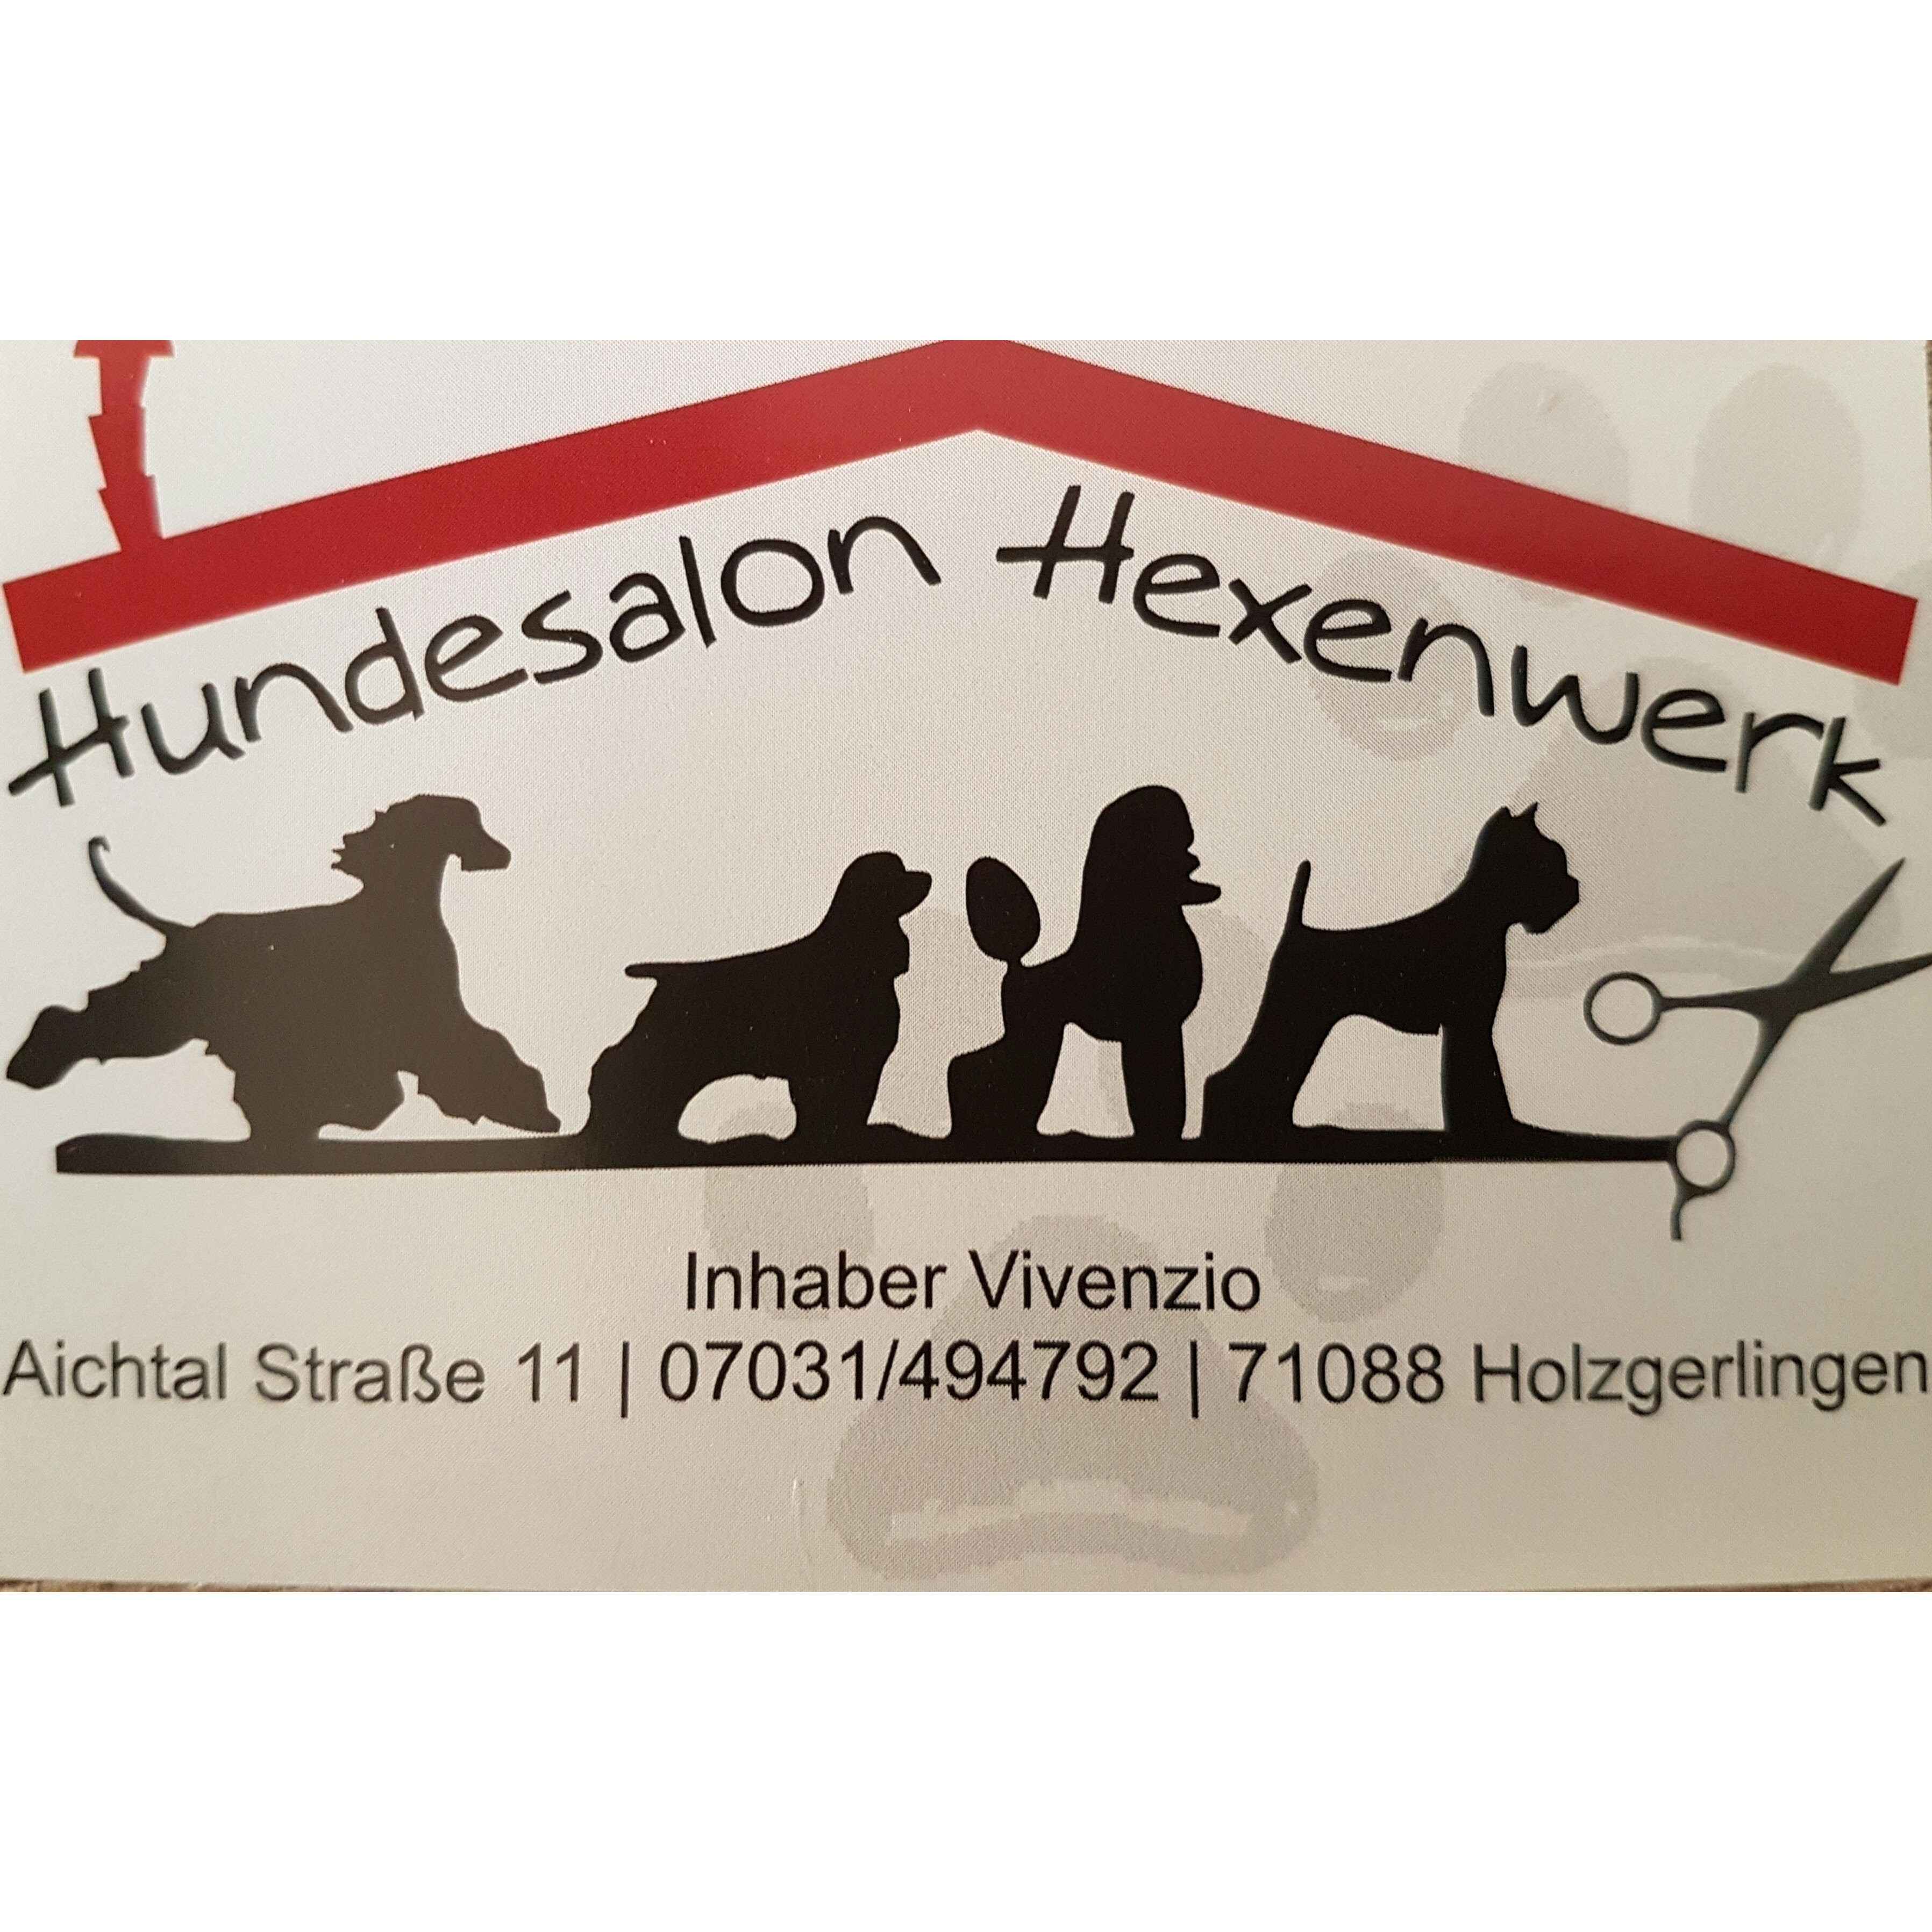 Hundesalon Hexenwerk – Ihr Hundesalon in Böblingen in Holzgerlingen - Logo